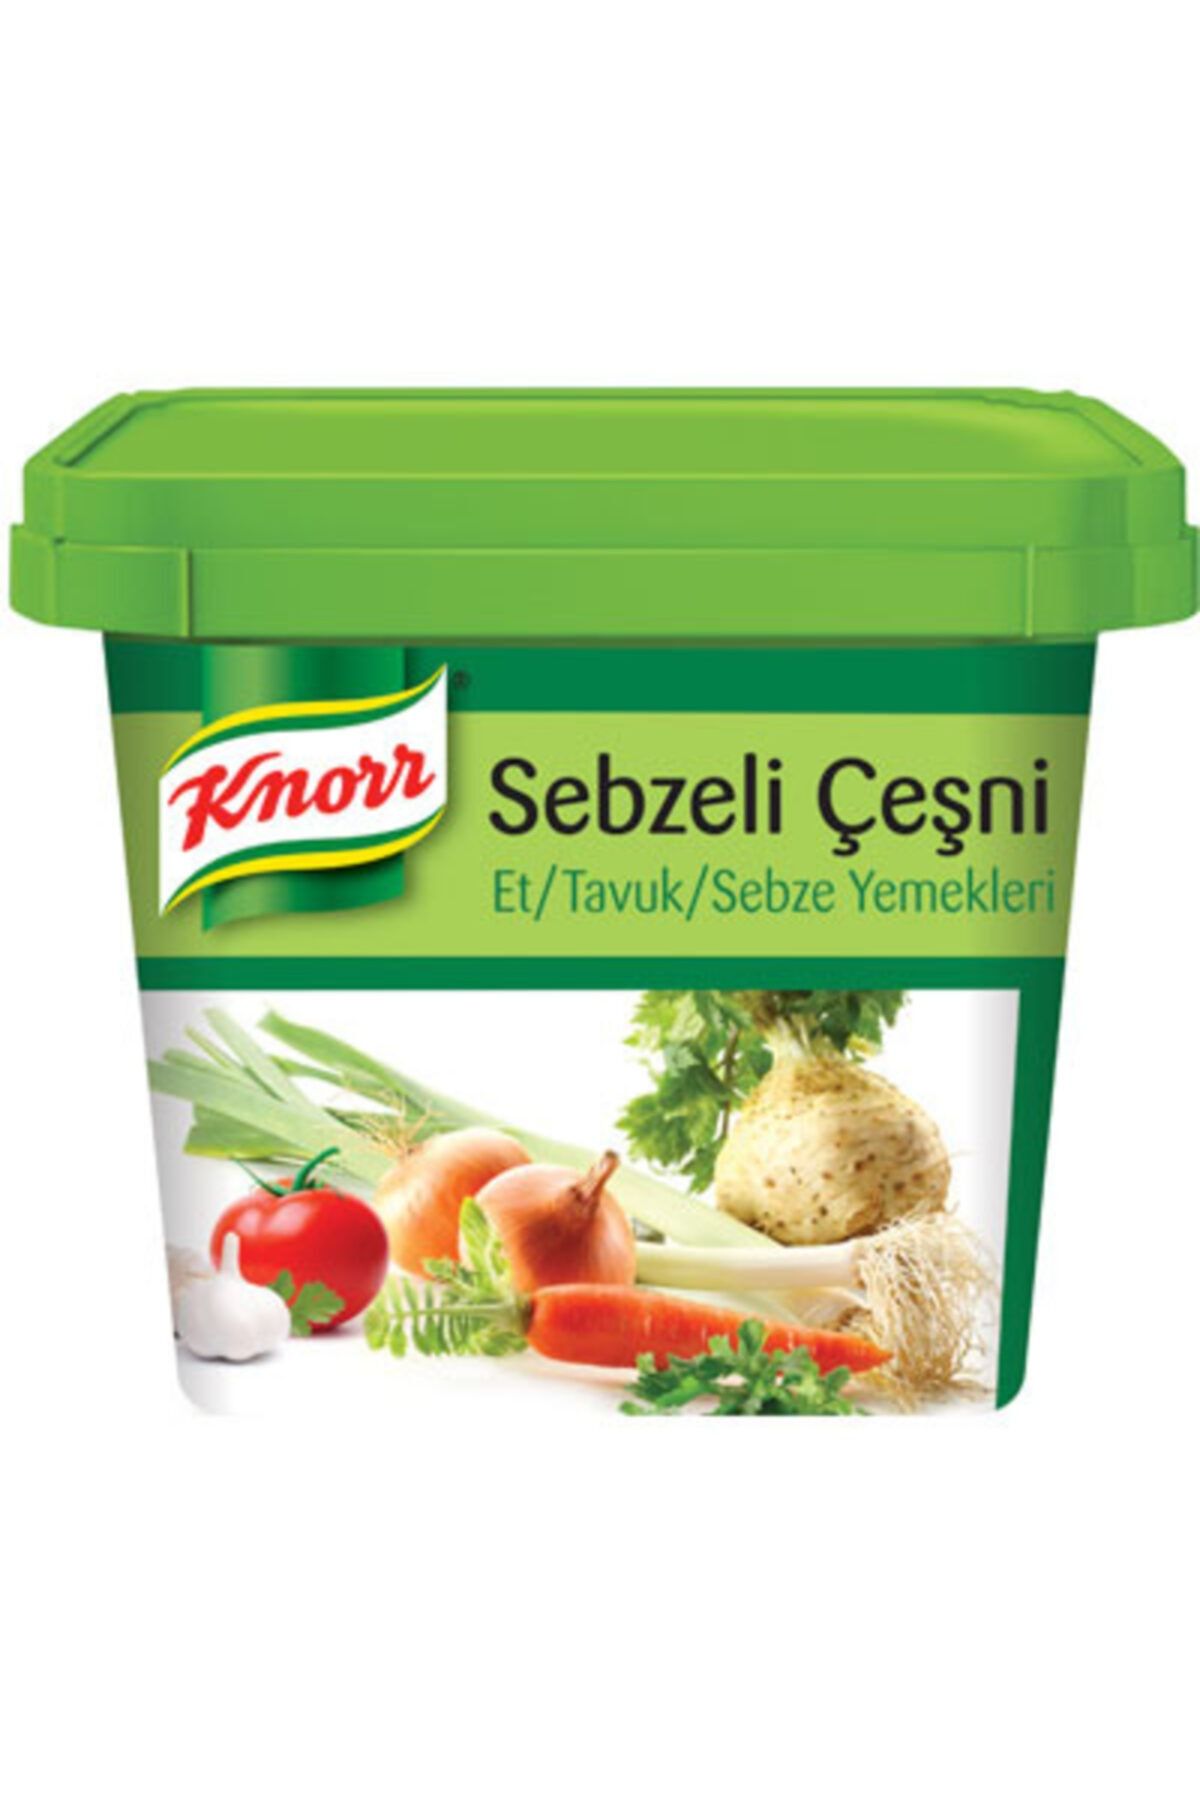 Knorr Sebzeli Çeşni 750 gr